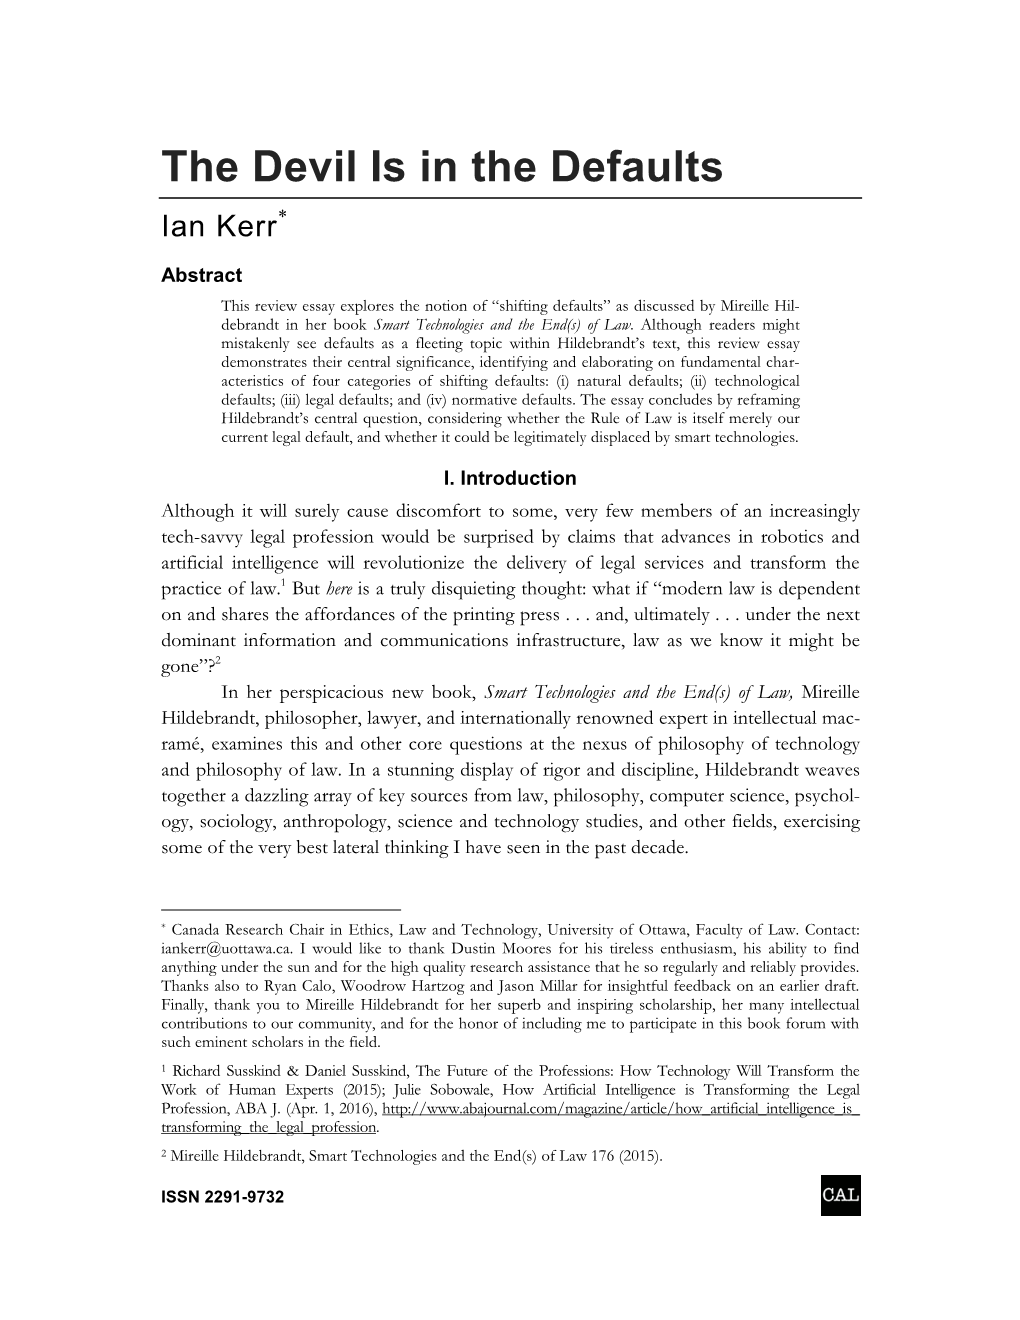 The Devil Is in the Defaults Ian Kerr*